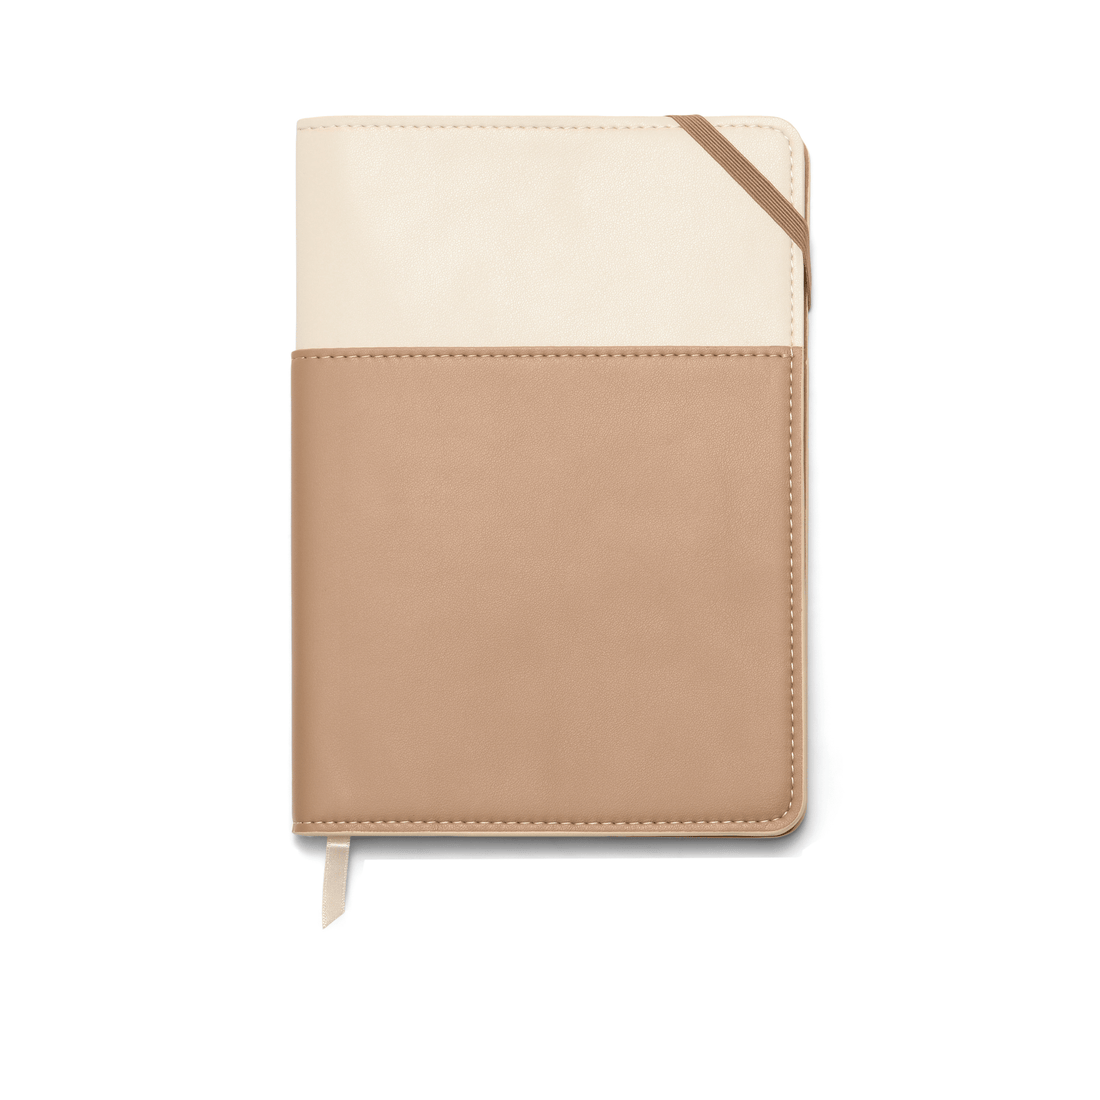 Designworks Ink Vegan Leather Pocket Journal - Ivory + Oat Milk